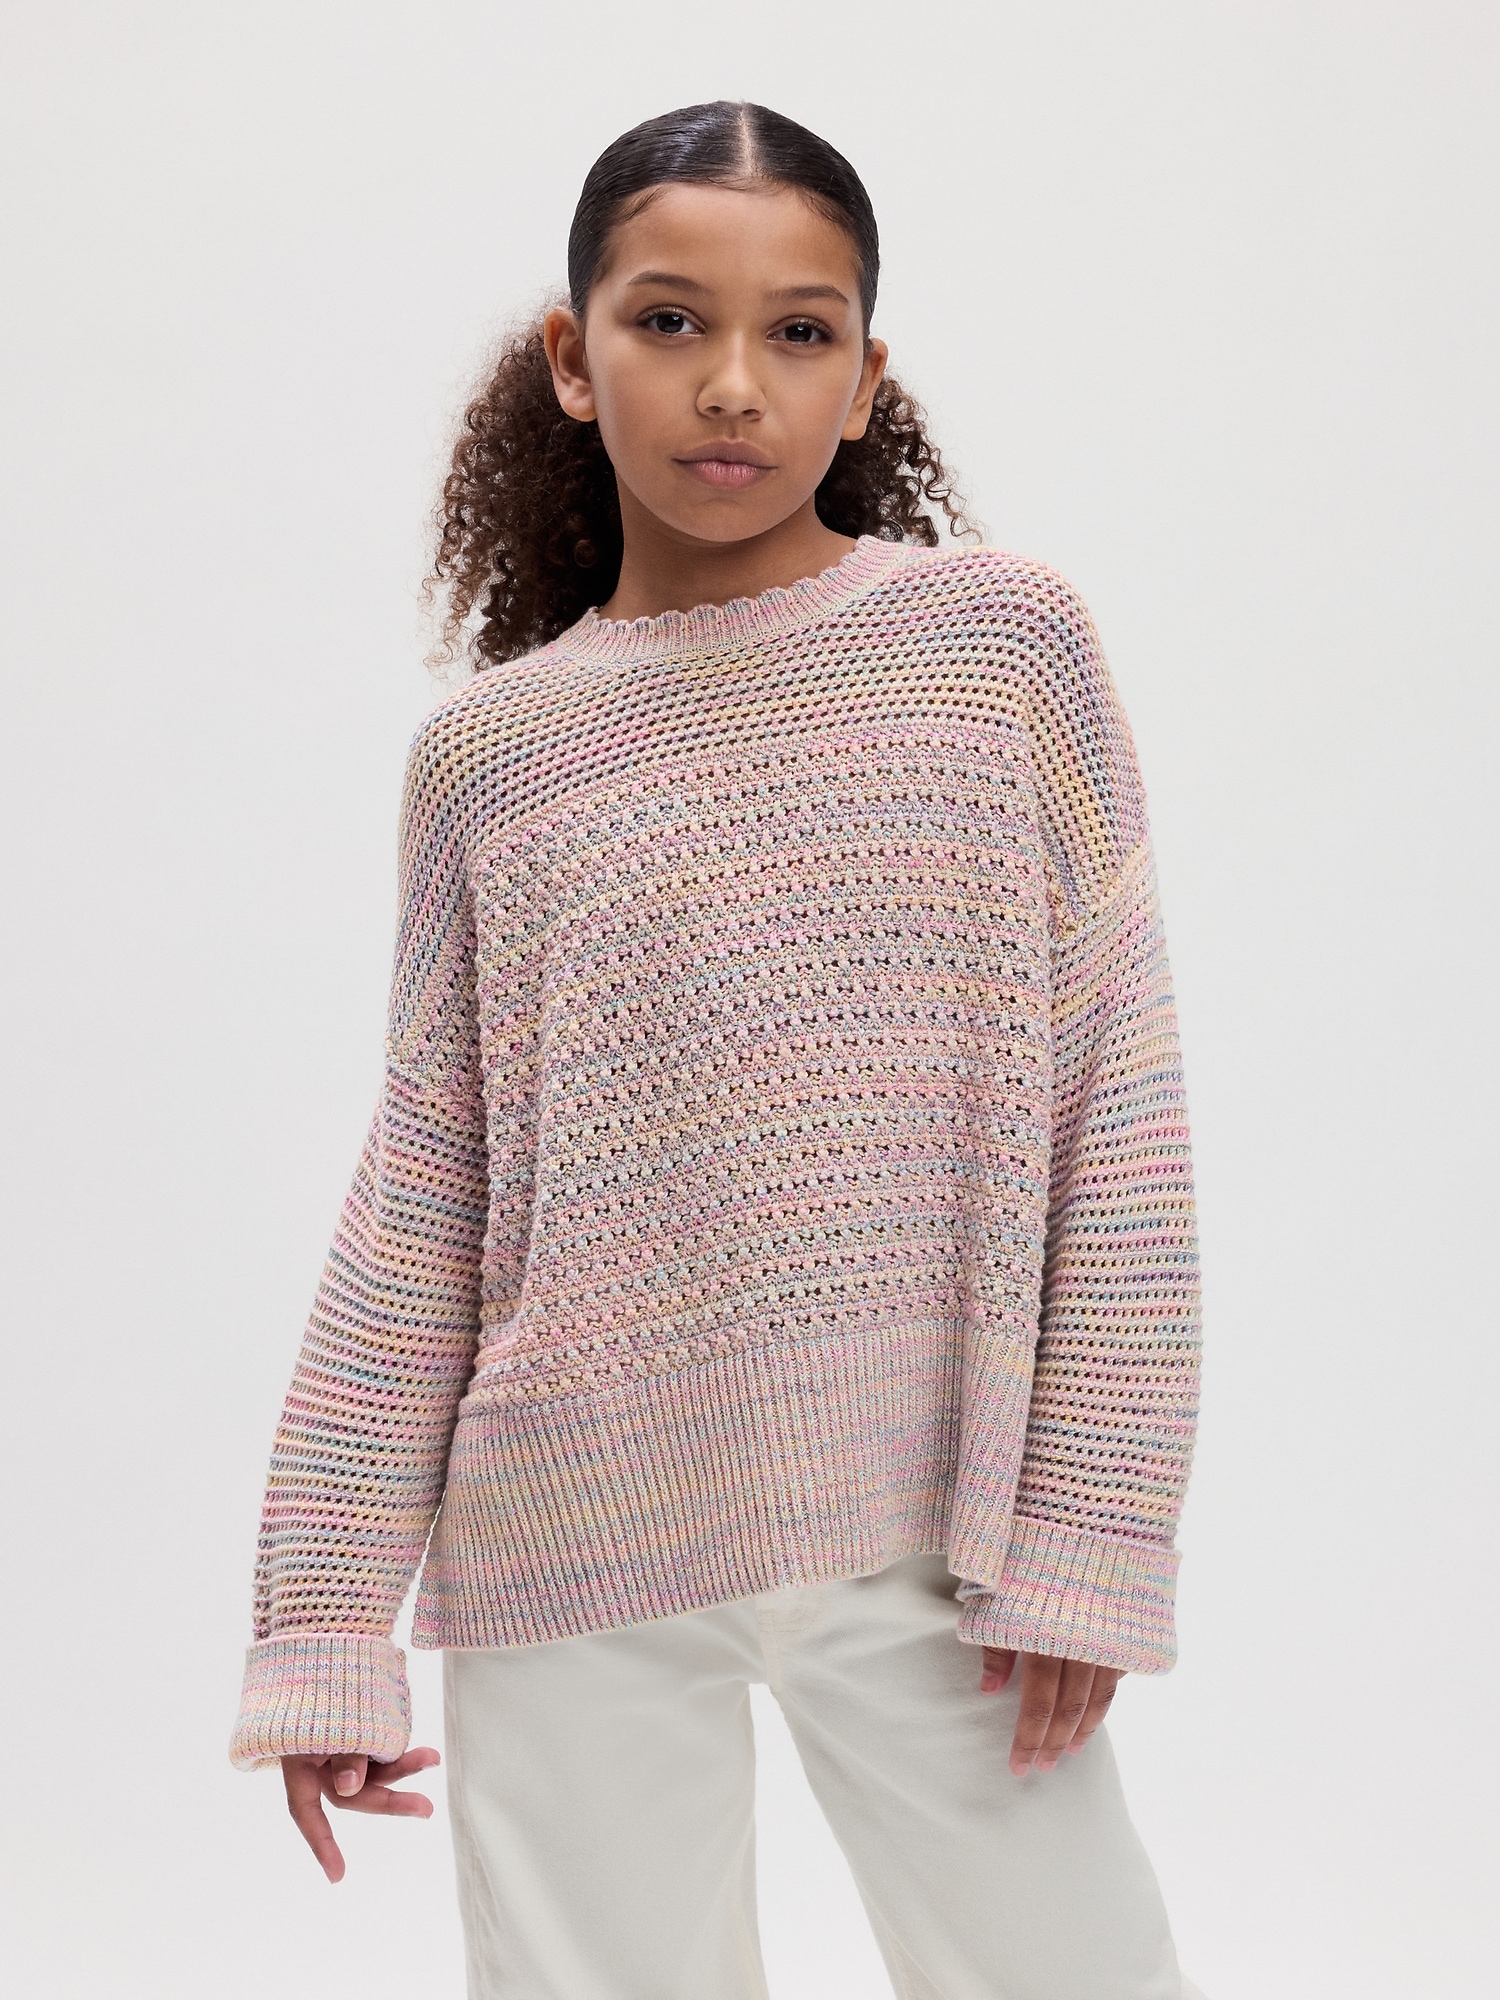 Gap Kids Crochet Sweater